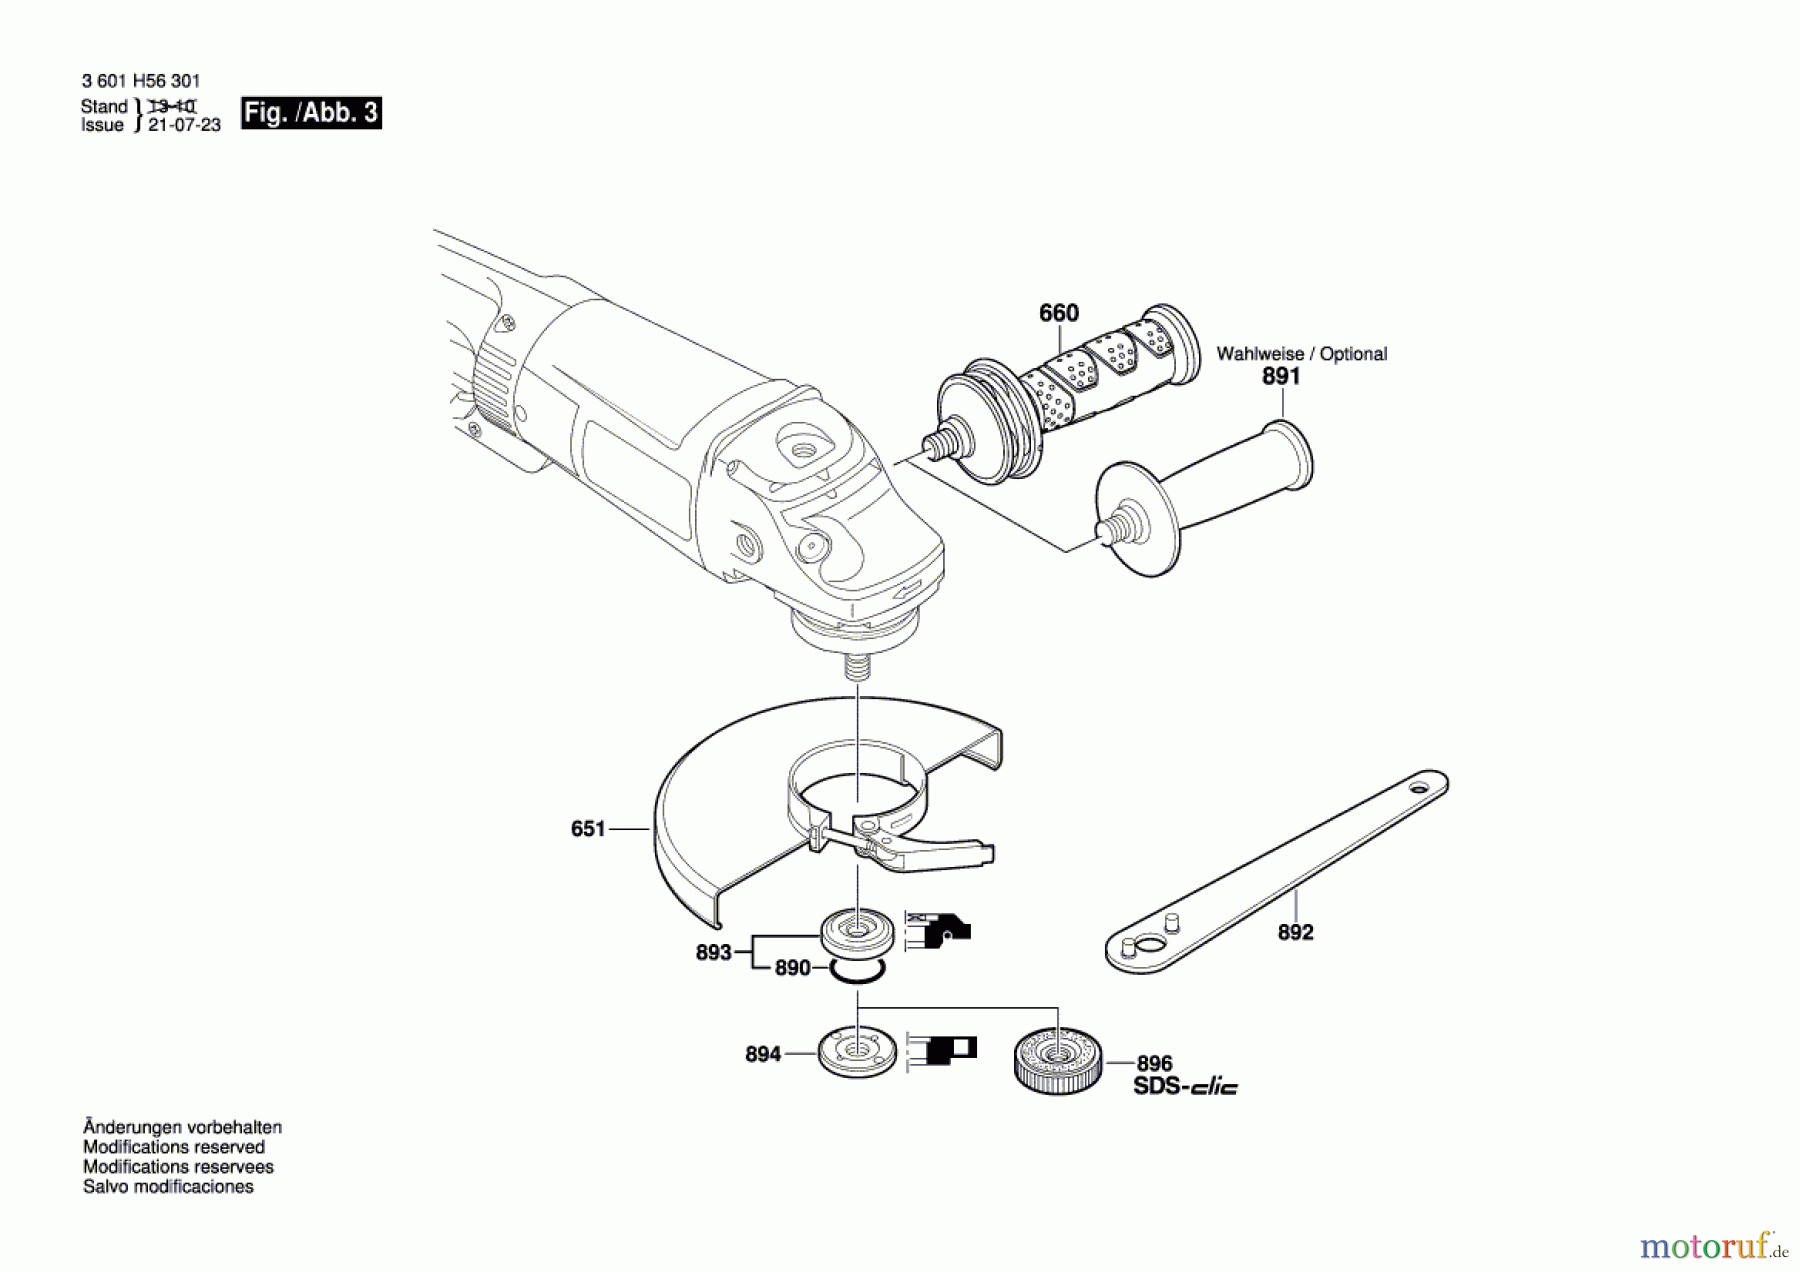  Bosch Werkzeug Winkelschleifer GWS 26-230 B Seite 3